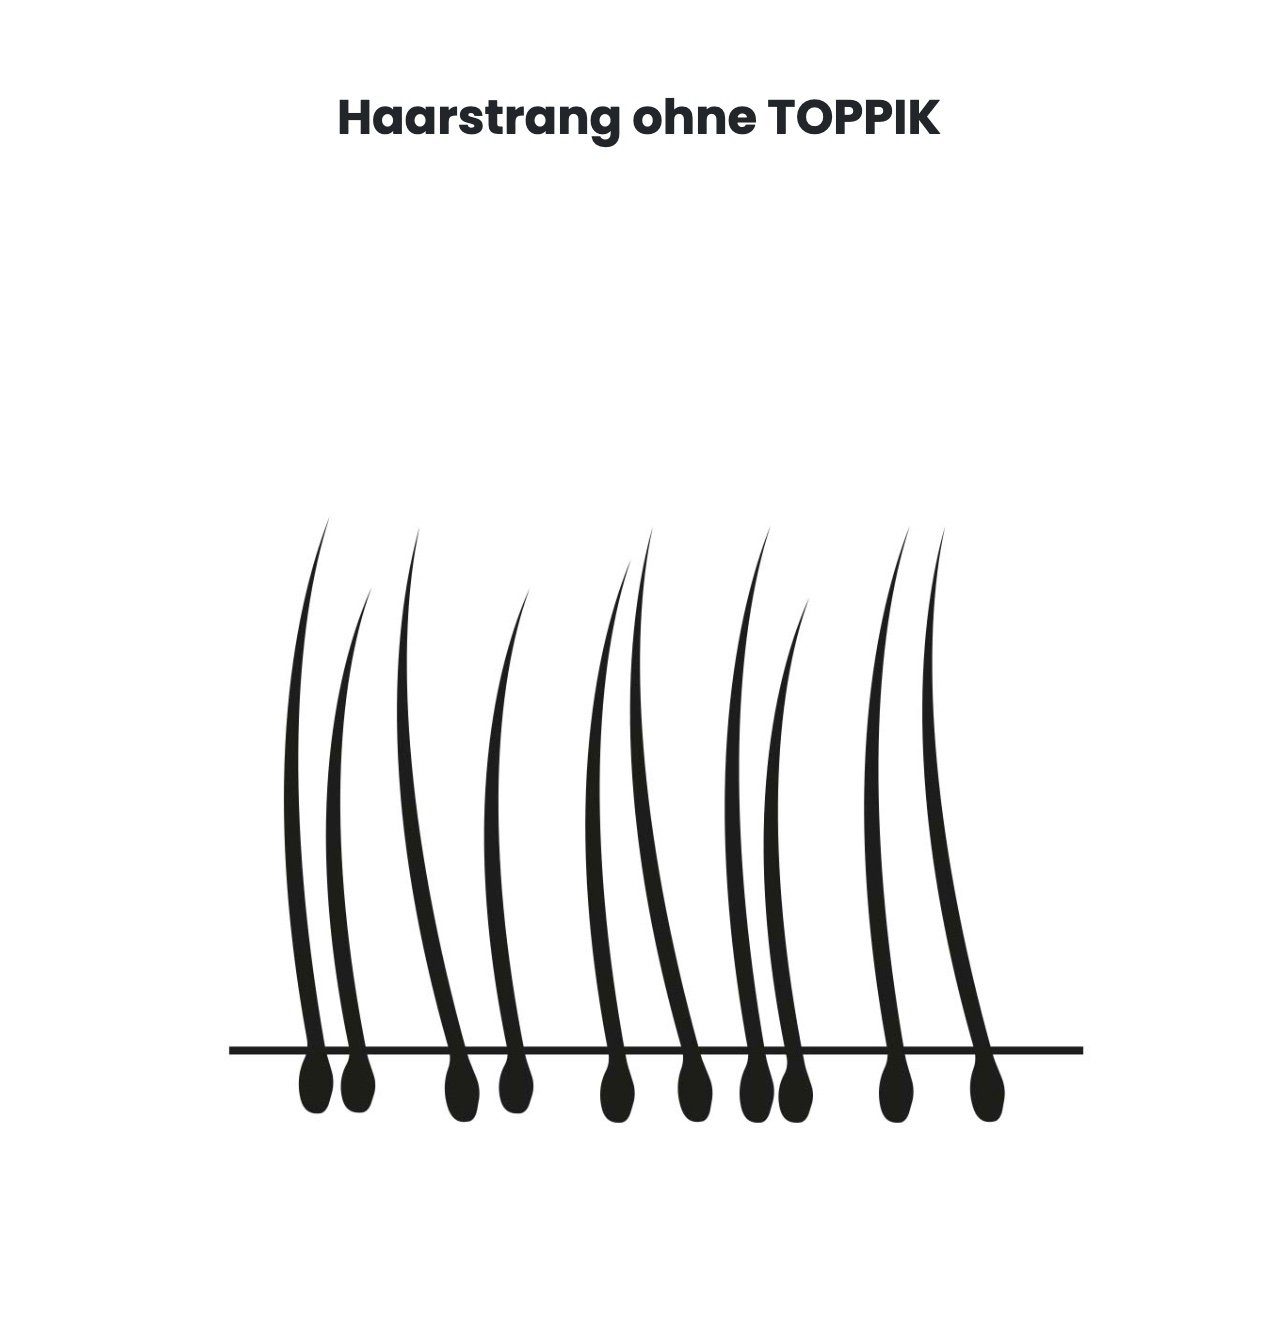 TOPPIK Haarstyling-Set TOPPIK 55 g. - Streuhaar, Haarverdichtung, Schütthaar, Haarfasern, Puder, Hair Fibers Dunkelbraun